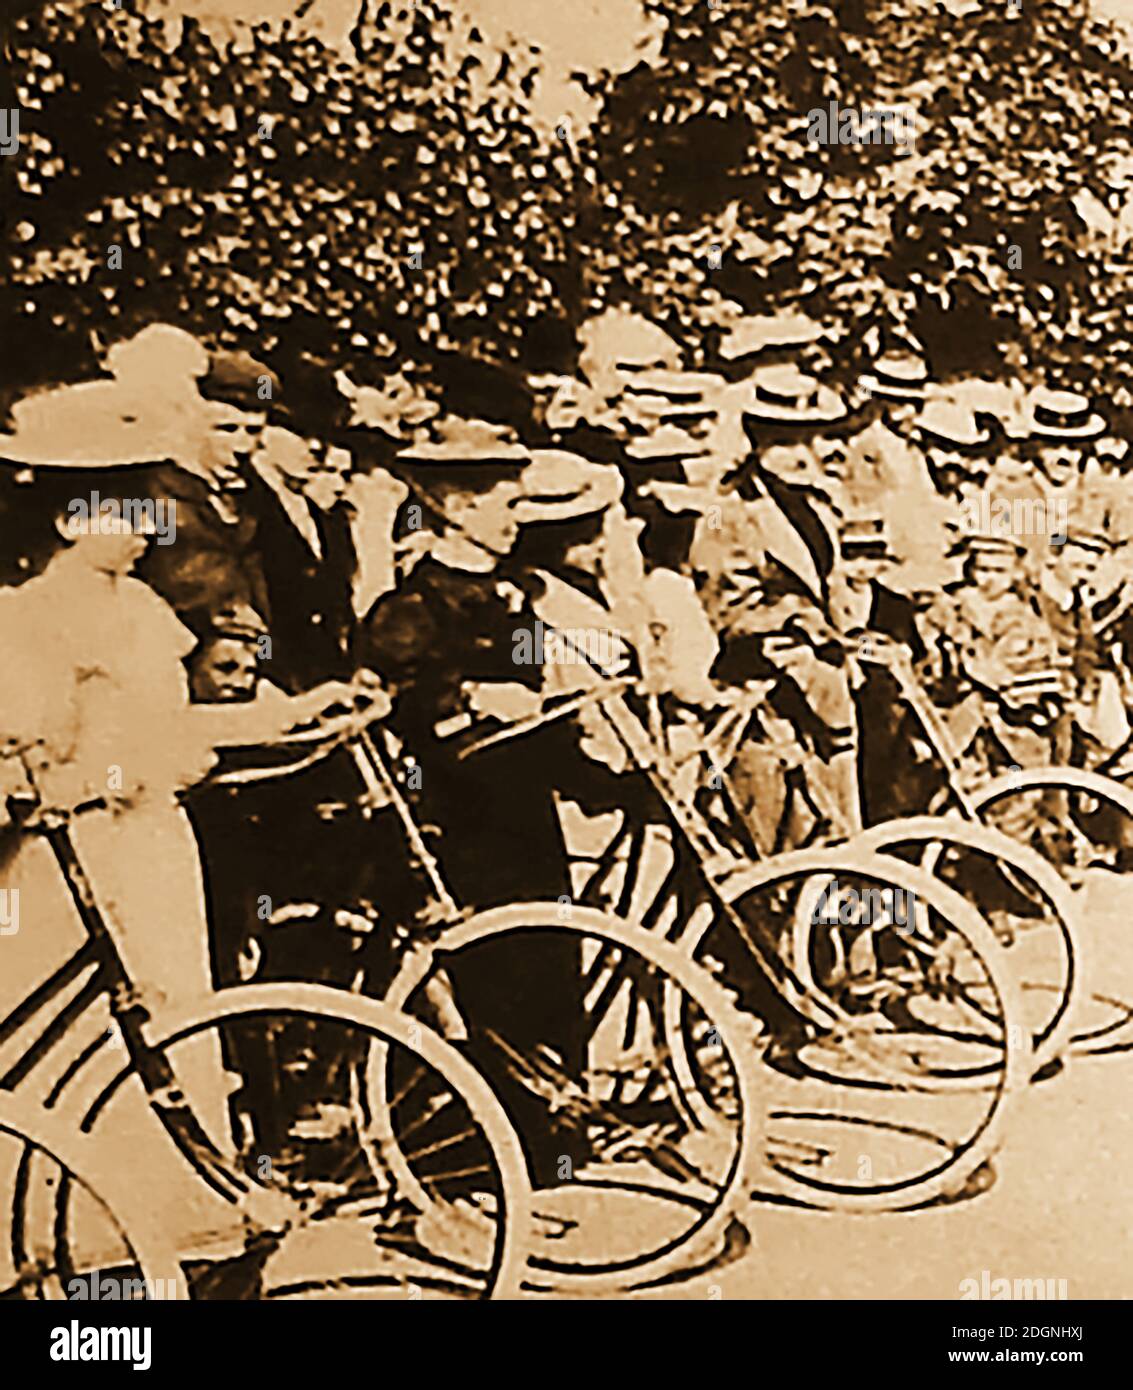 Club de ciclismo femenino victoriano. La invención de la bicicleta de seguridad comenzó una nueva locura en el ciclismo, especialmente entre las mujeres que formaron clubes de ciclismo. Los clubes de ciclismo de mujeres como la Asociación de ciclistas de mujeres (LCA) eran populares en Gran Bretaña y otros lugares. Foto de stock